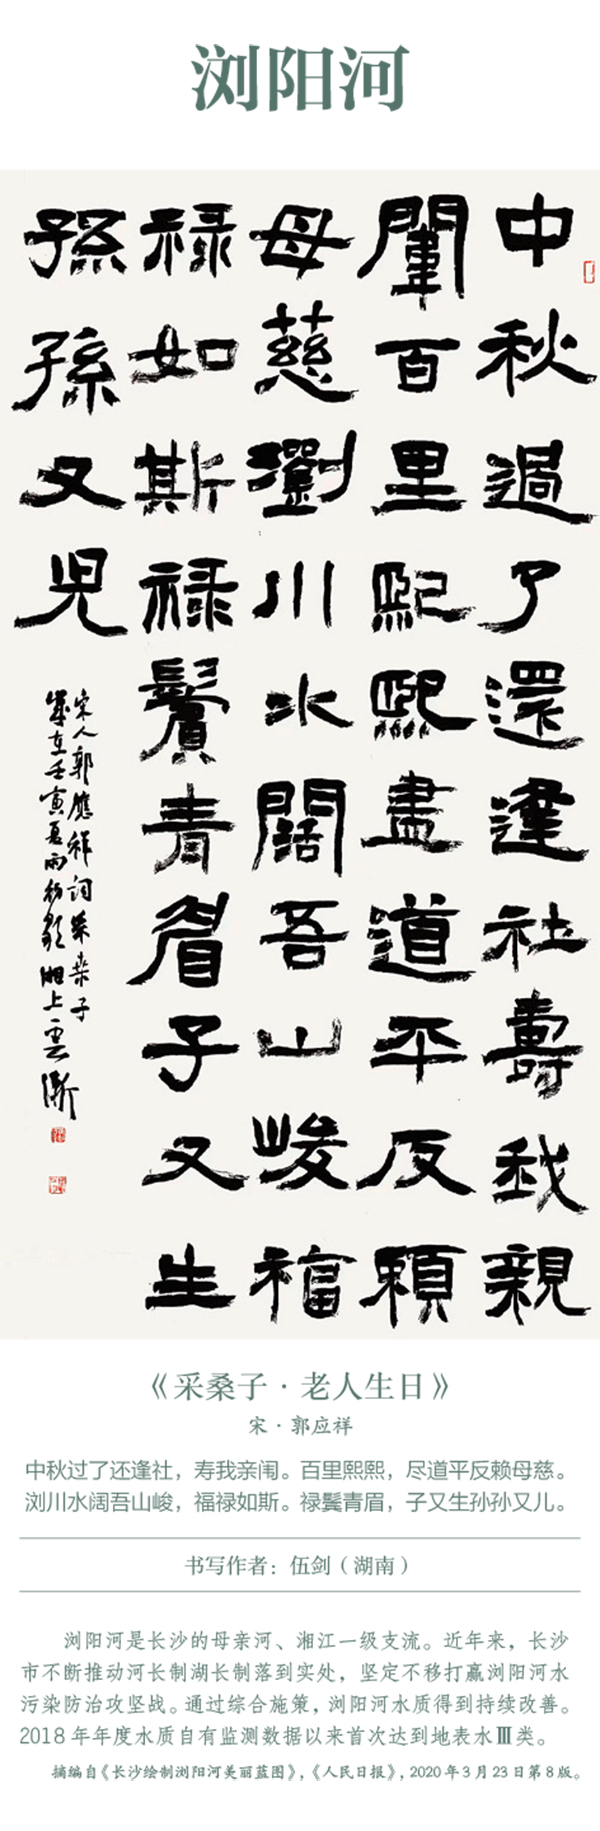 中国书协主题创作书法系列展——美丽中国